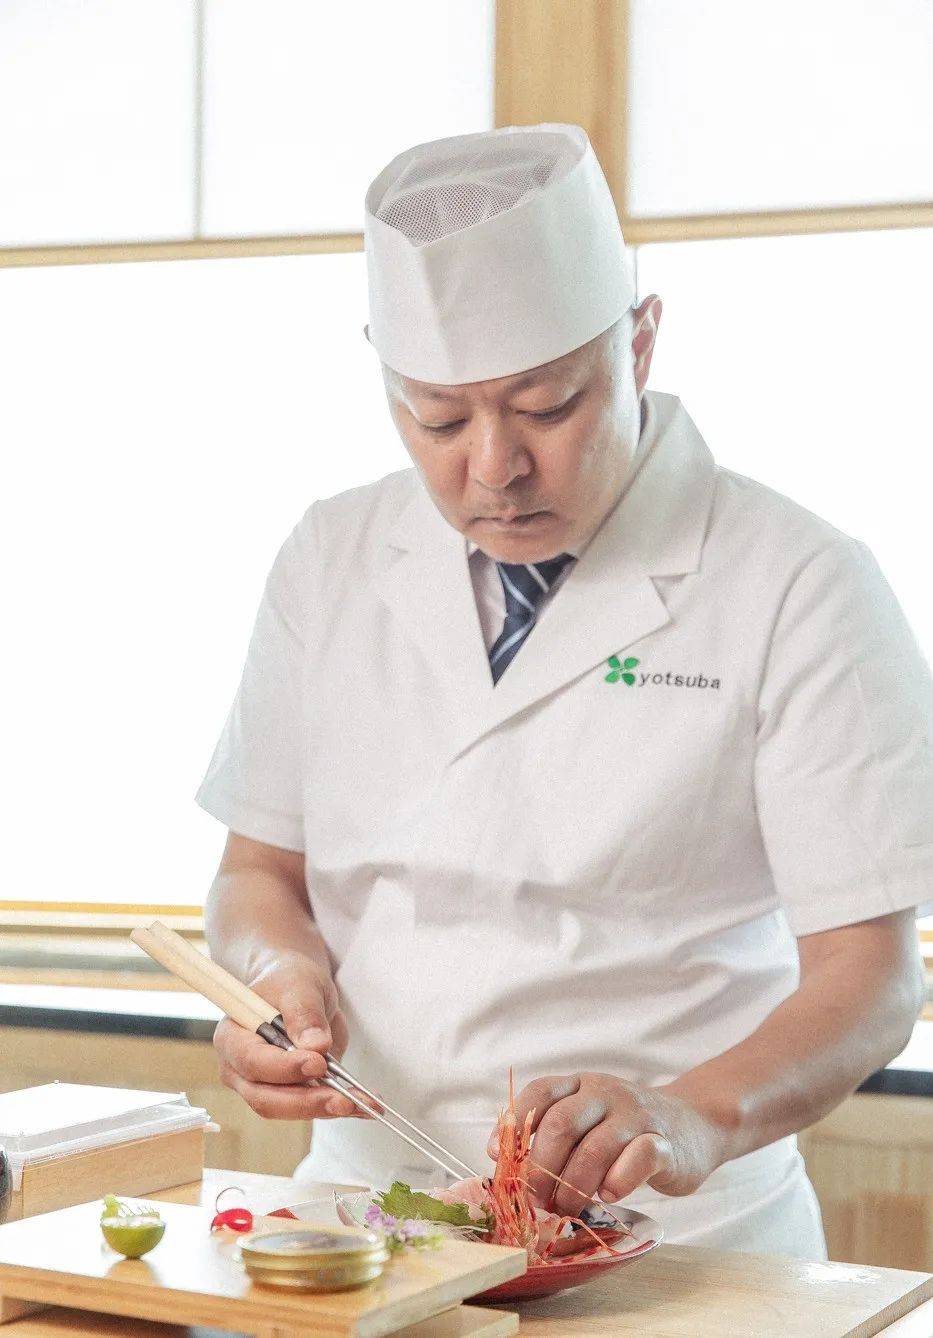 三十多年经验丰富的日籍金牌主理人宮田克哉先生携手黑珍珠厨师团队